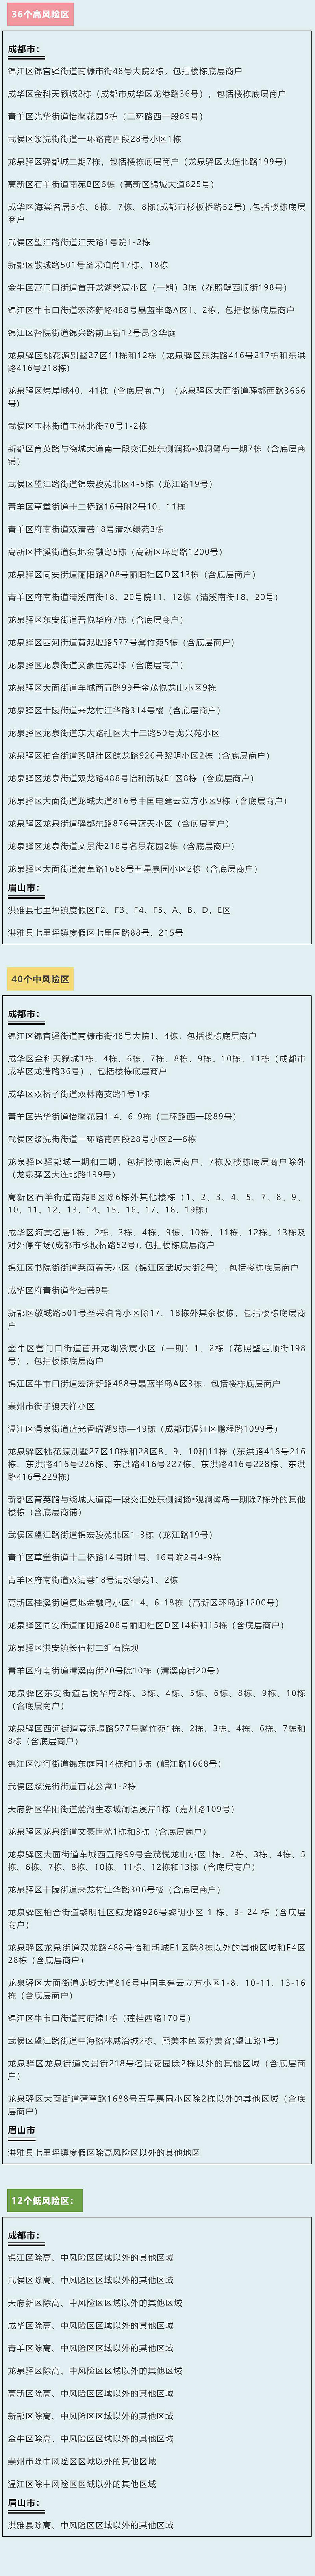 四川省新型冠状病毒肺炎疫情最新情况（7月23日发布）「相关图片」